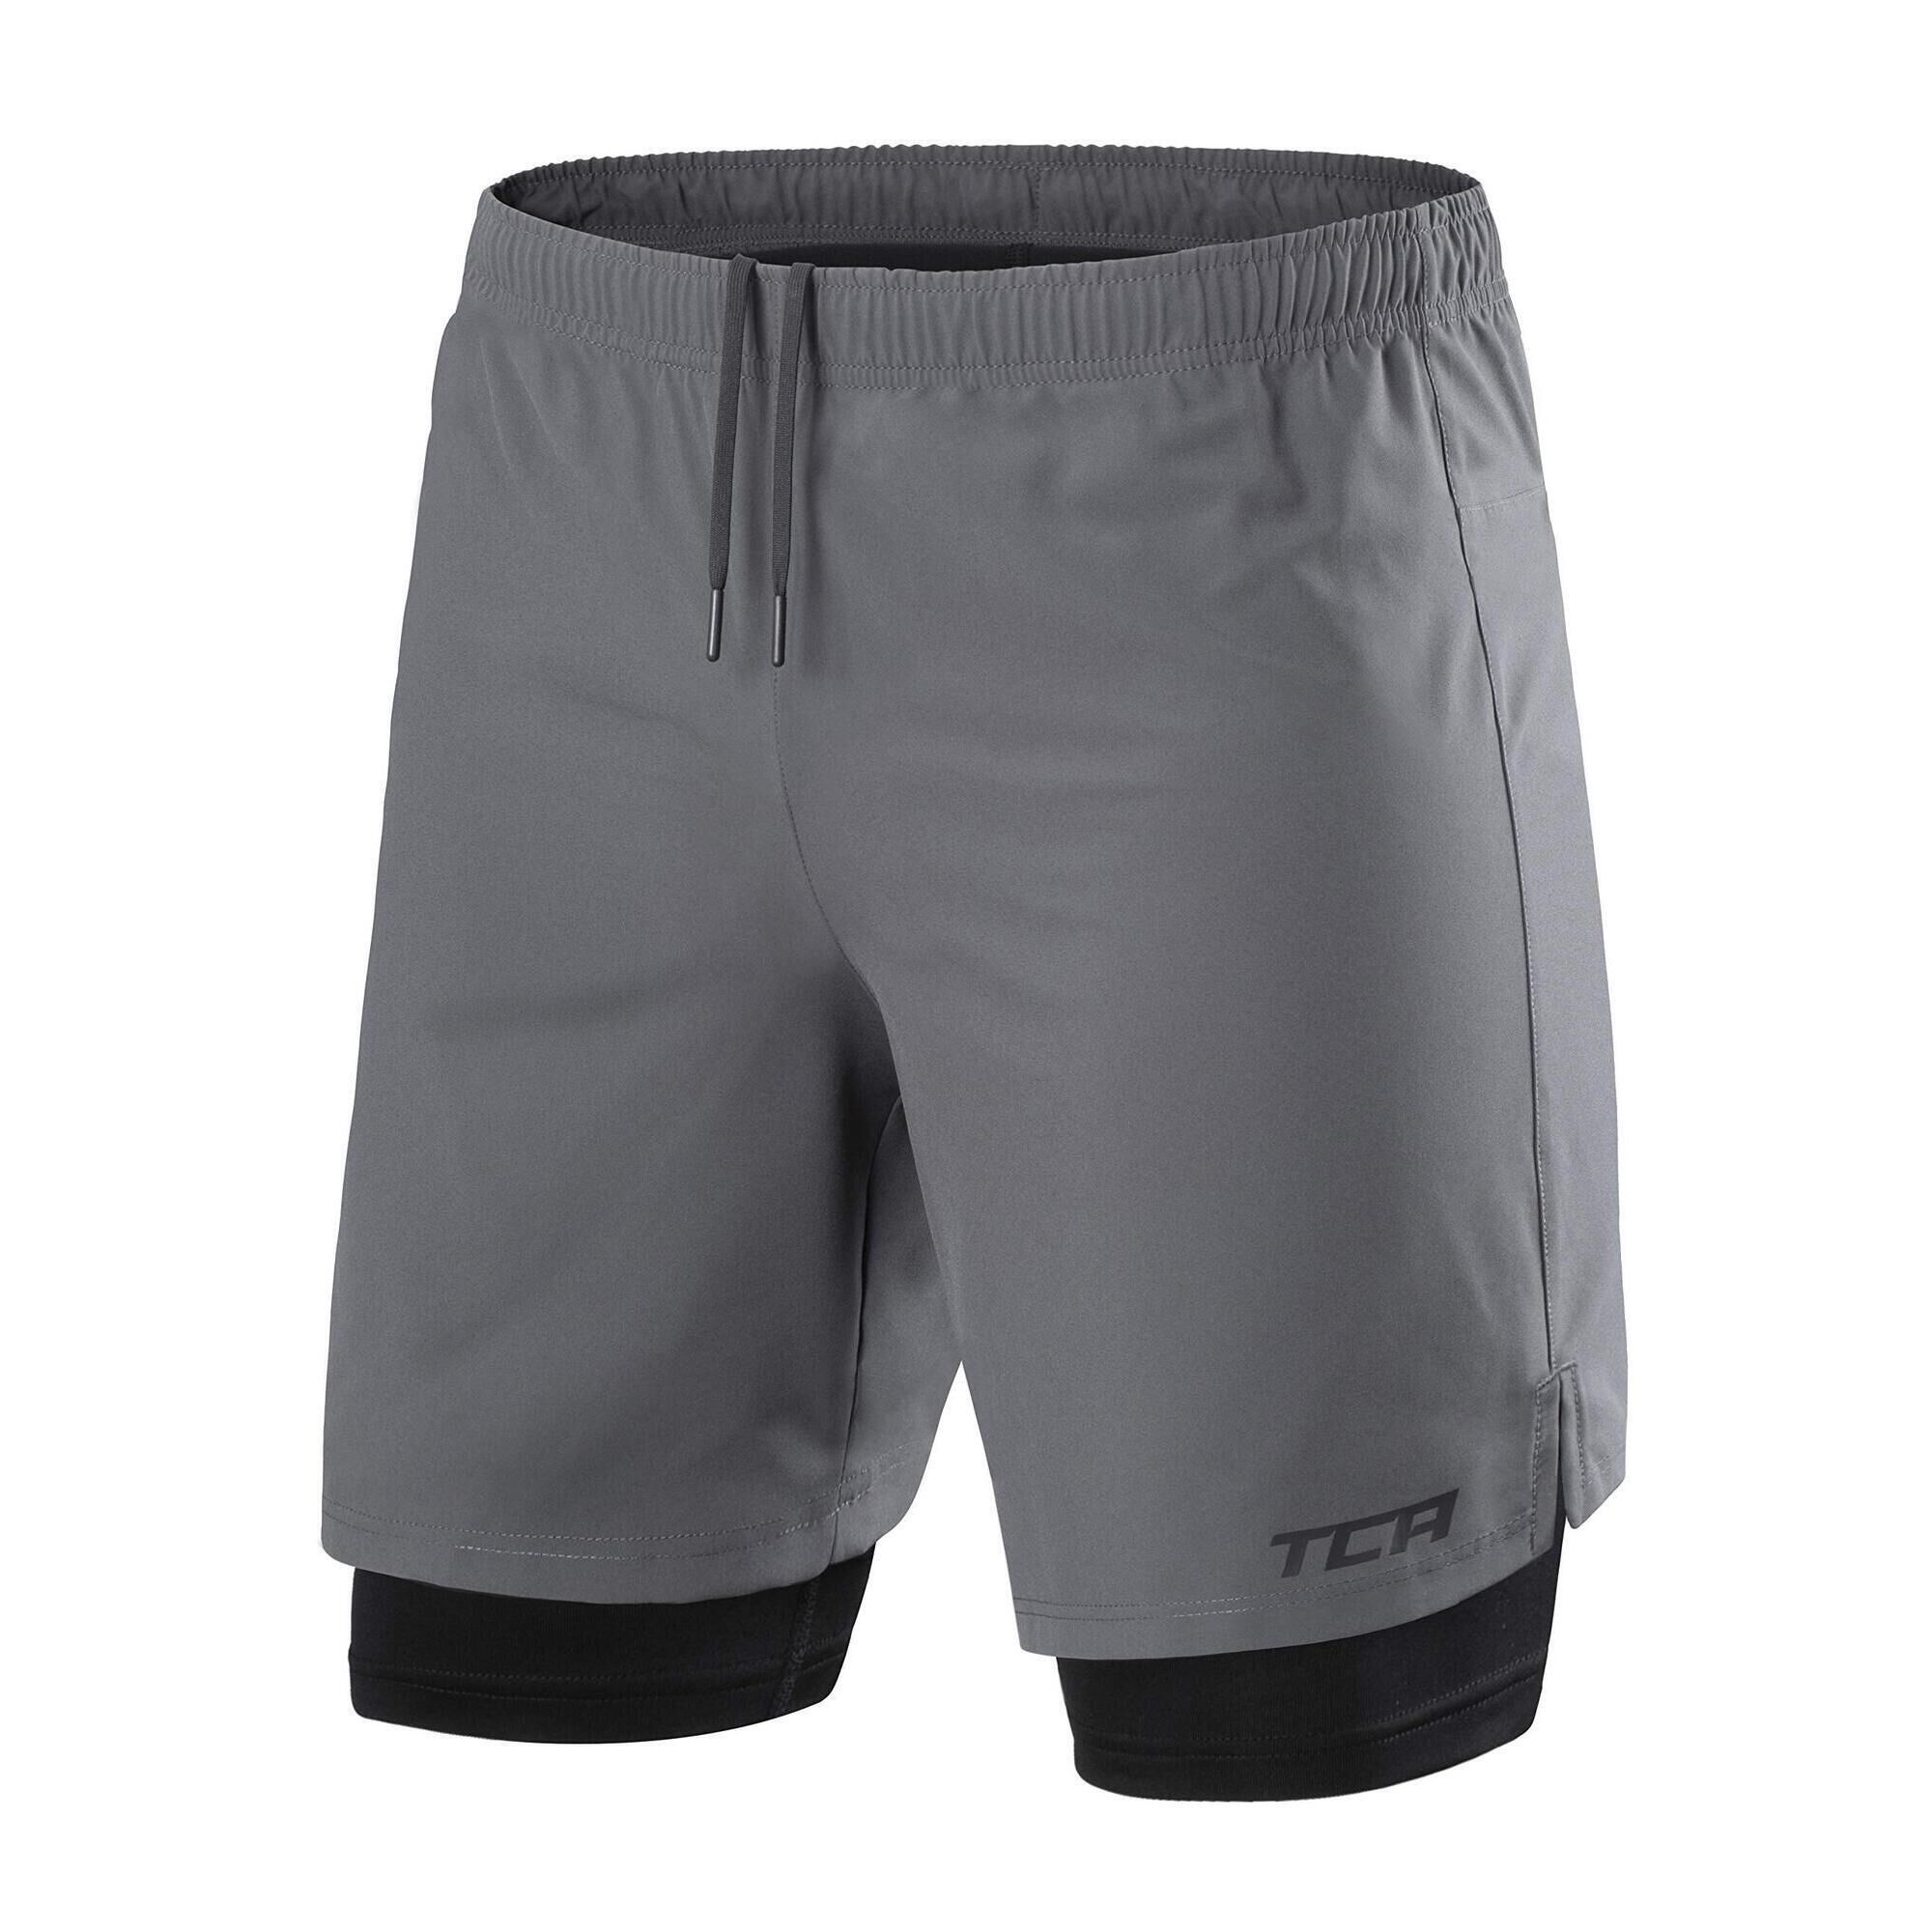 TCA Men's Ultra 2-in-1 Running Shorts with Key Pocket - Asphalt